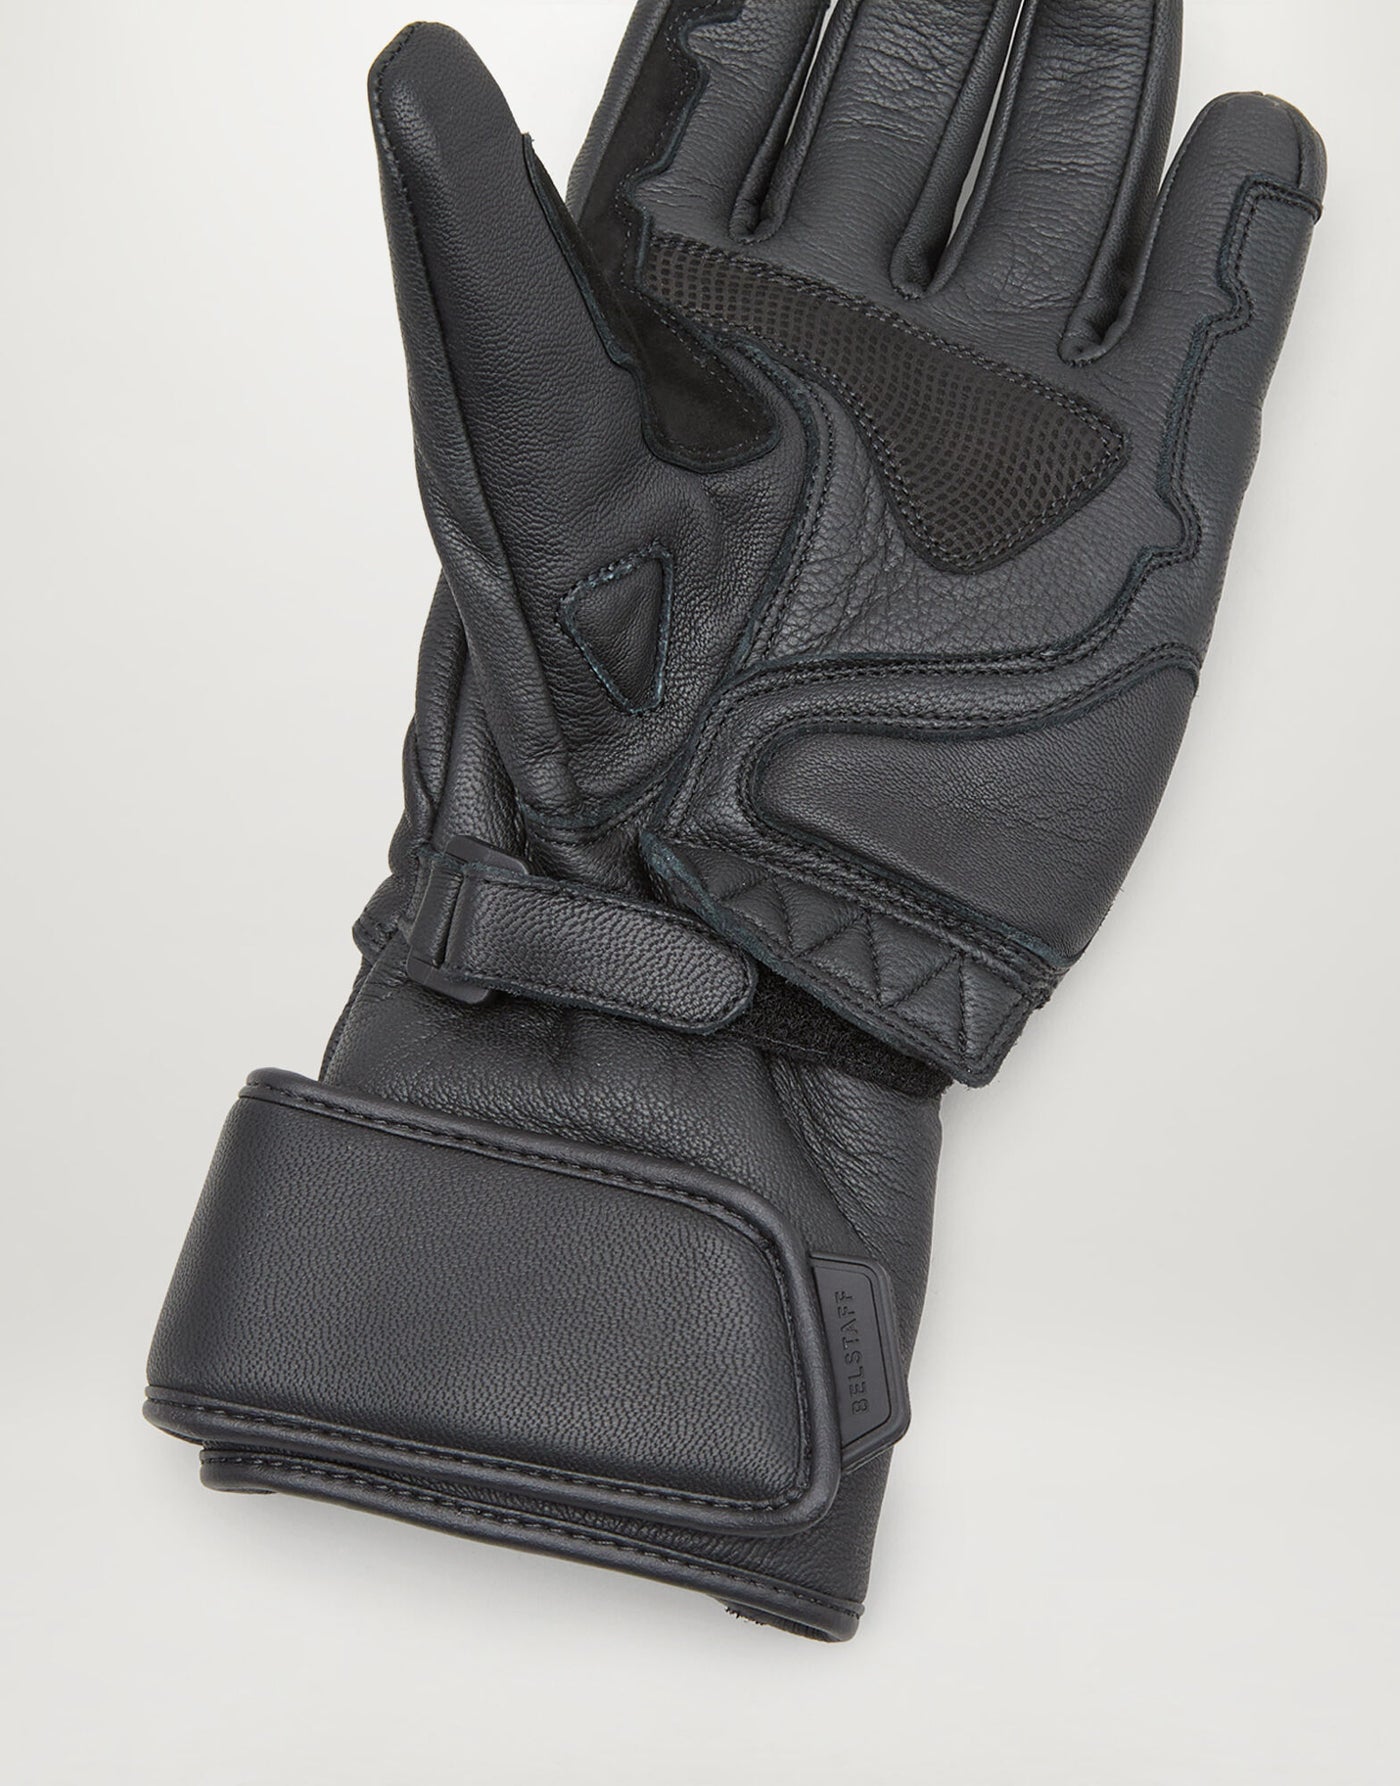 Belstaff Hesketh Black Leather Gloves